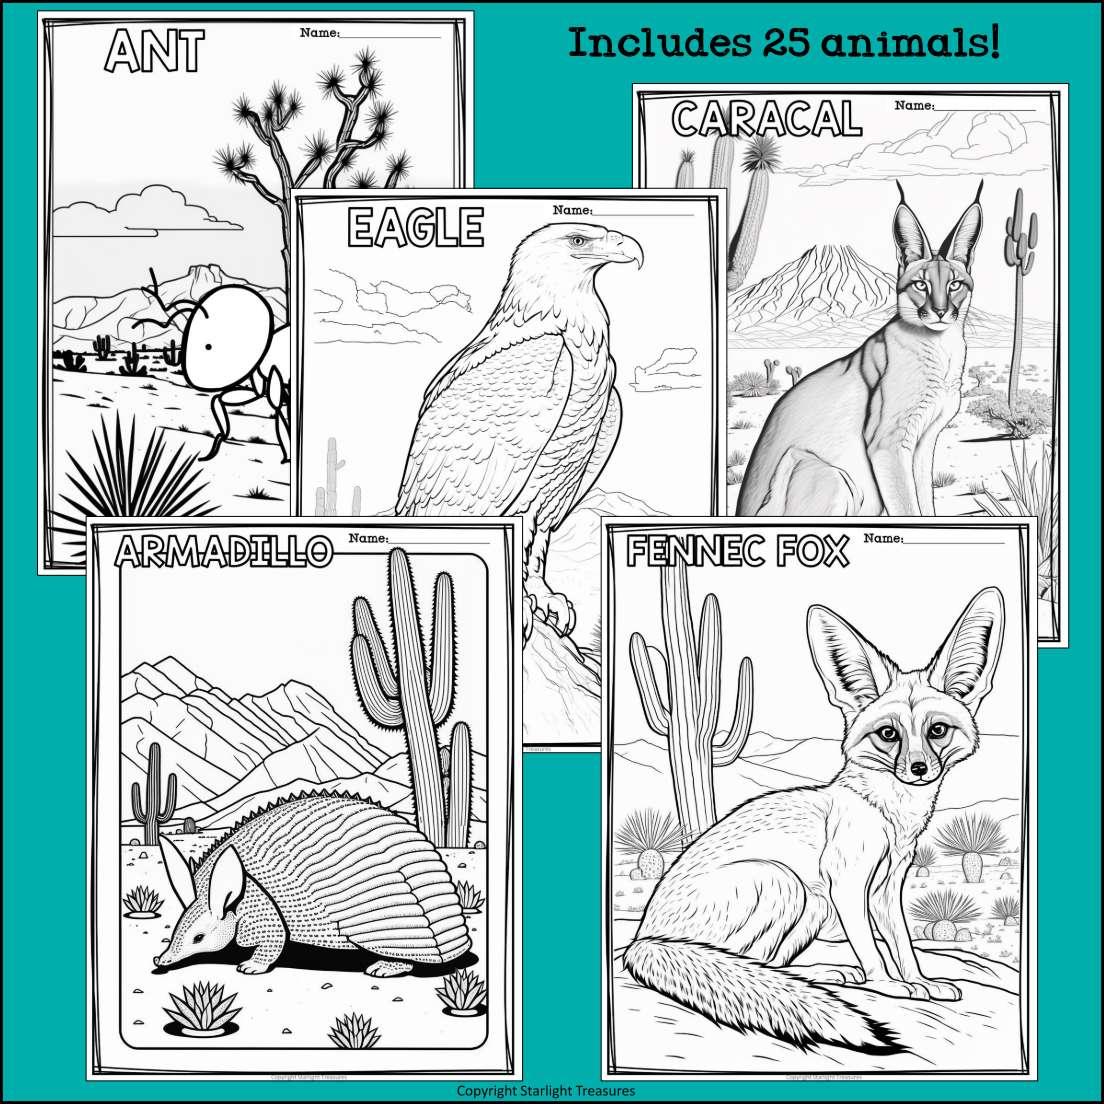 desert animals names